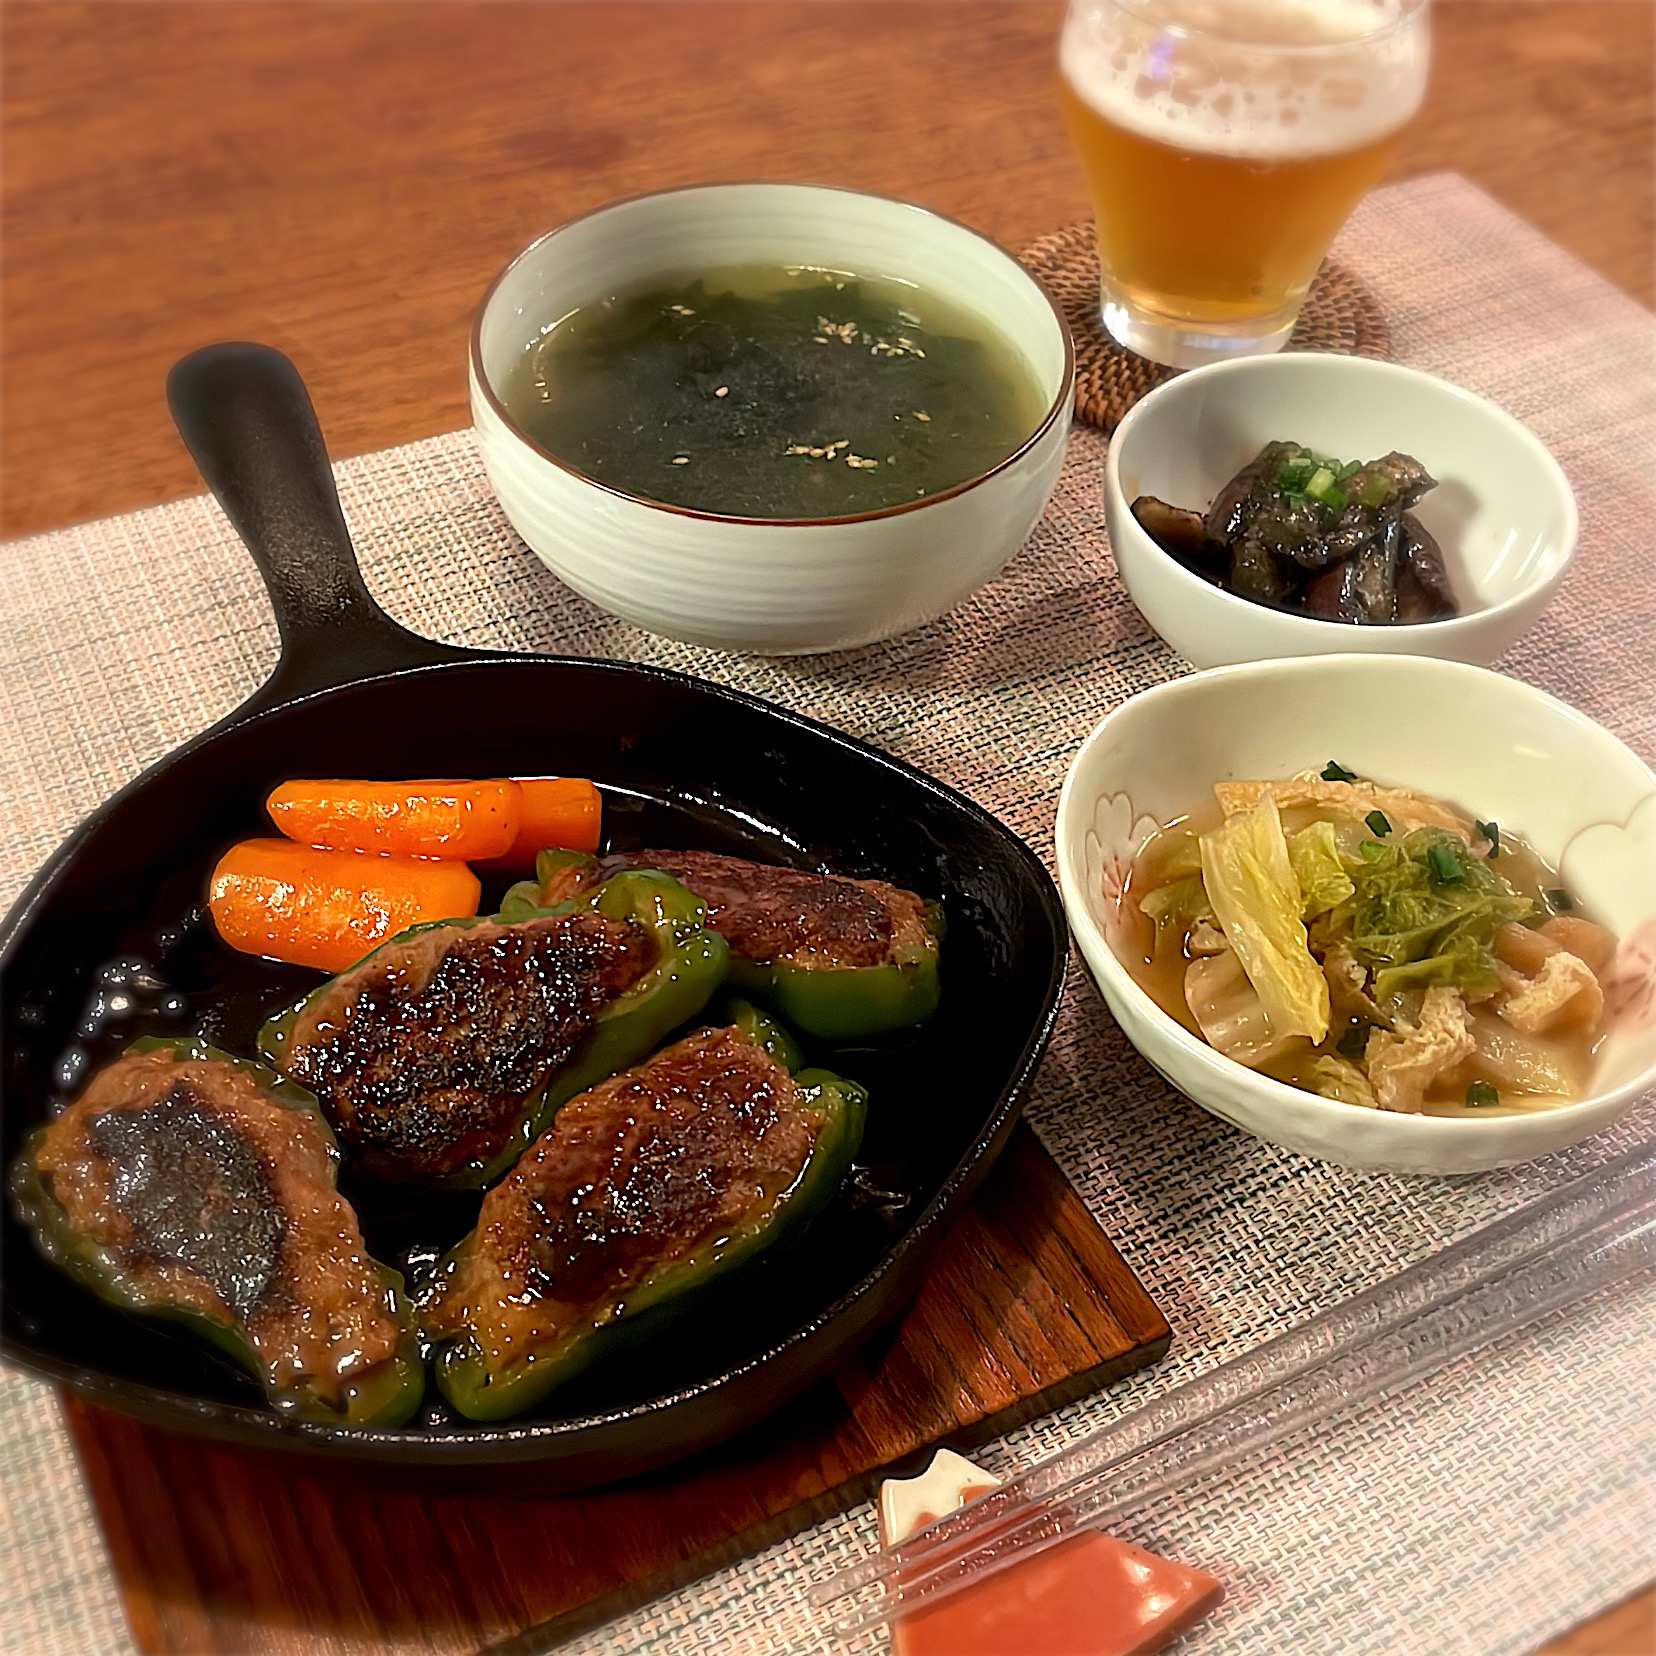 ピーマンの肉詰め
にんじんグラッセ
蒸しなす
油あげと白菜のさっぱり煮
韓国風わかめスープ